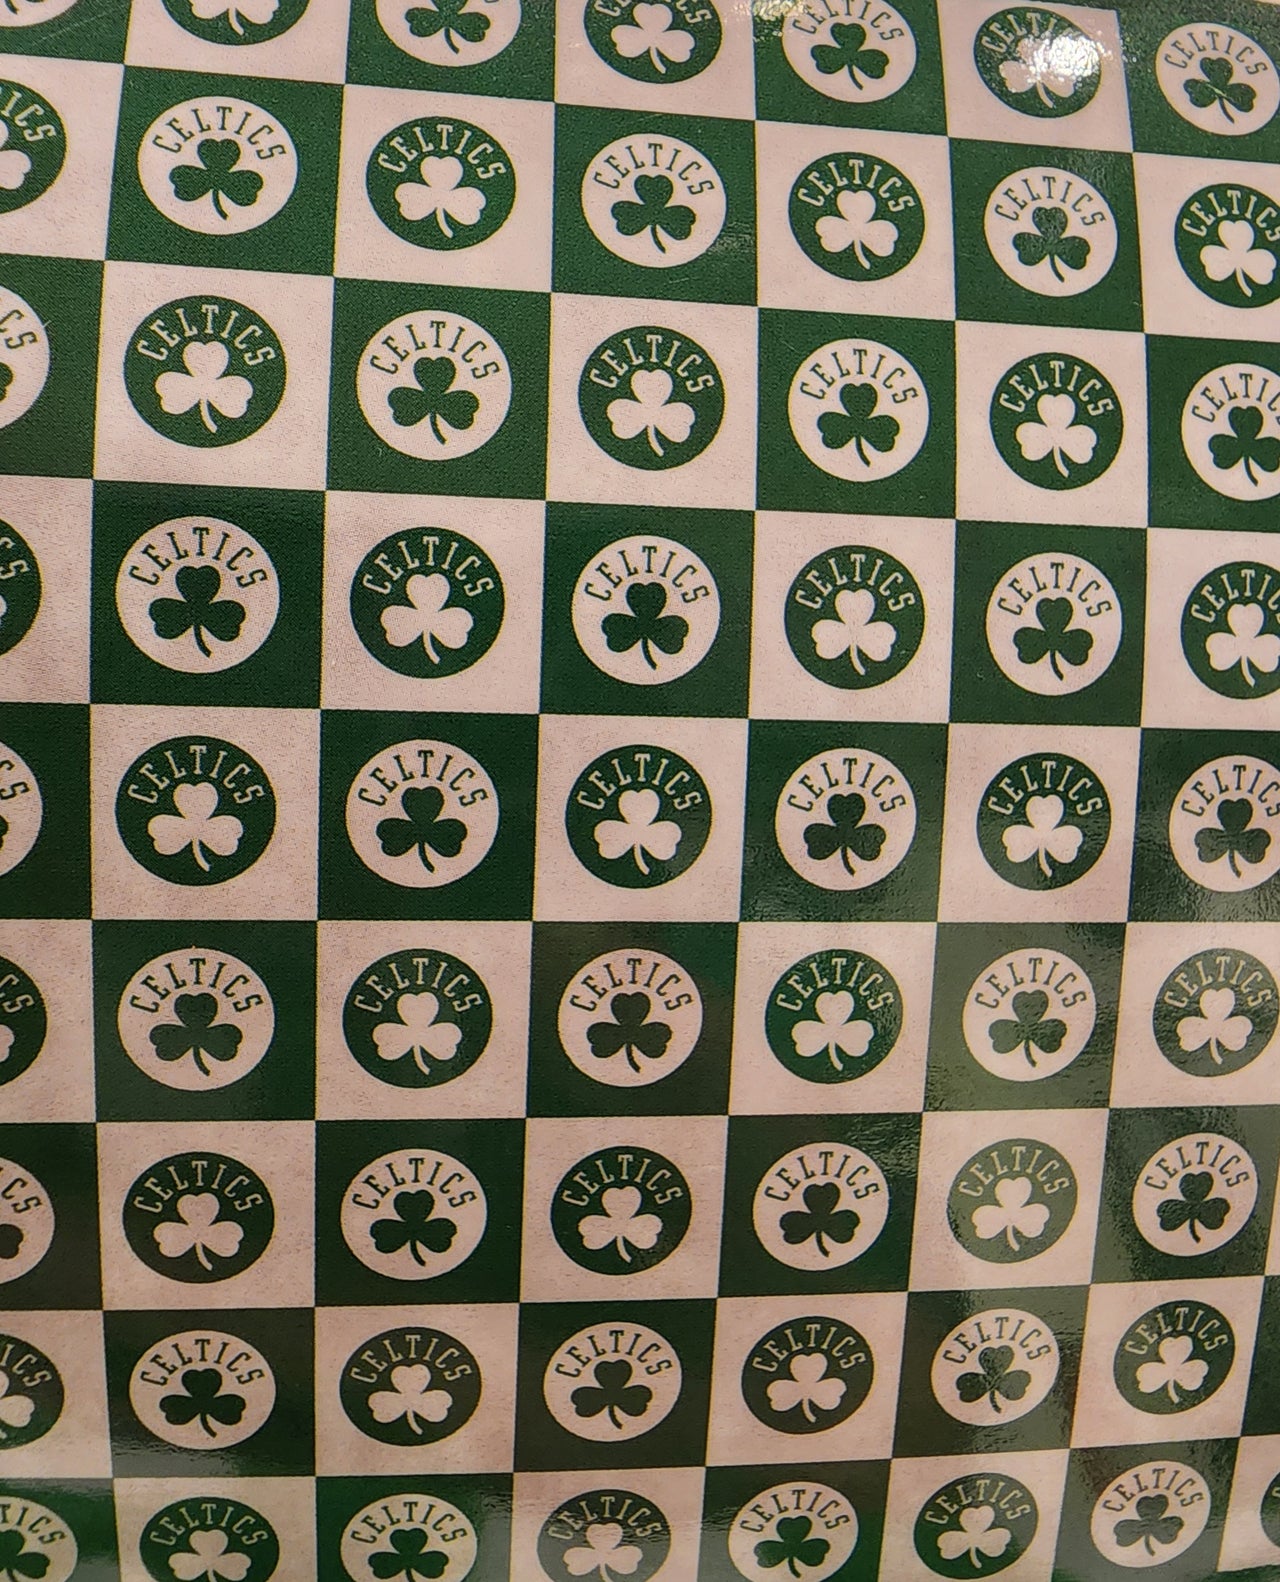 Boston Celtics 60" x 70" Super Sherpa Soft Blanket